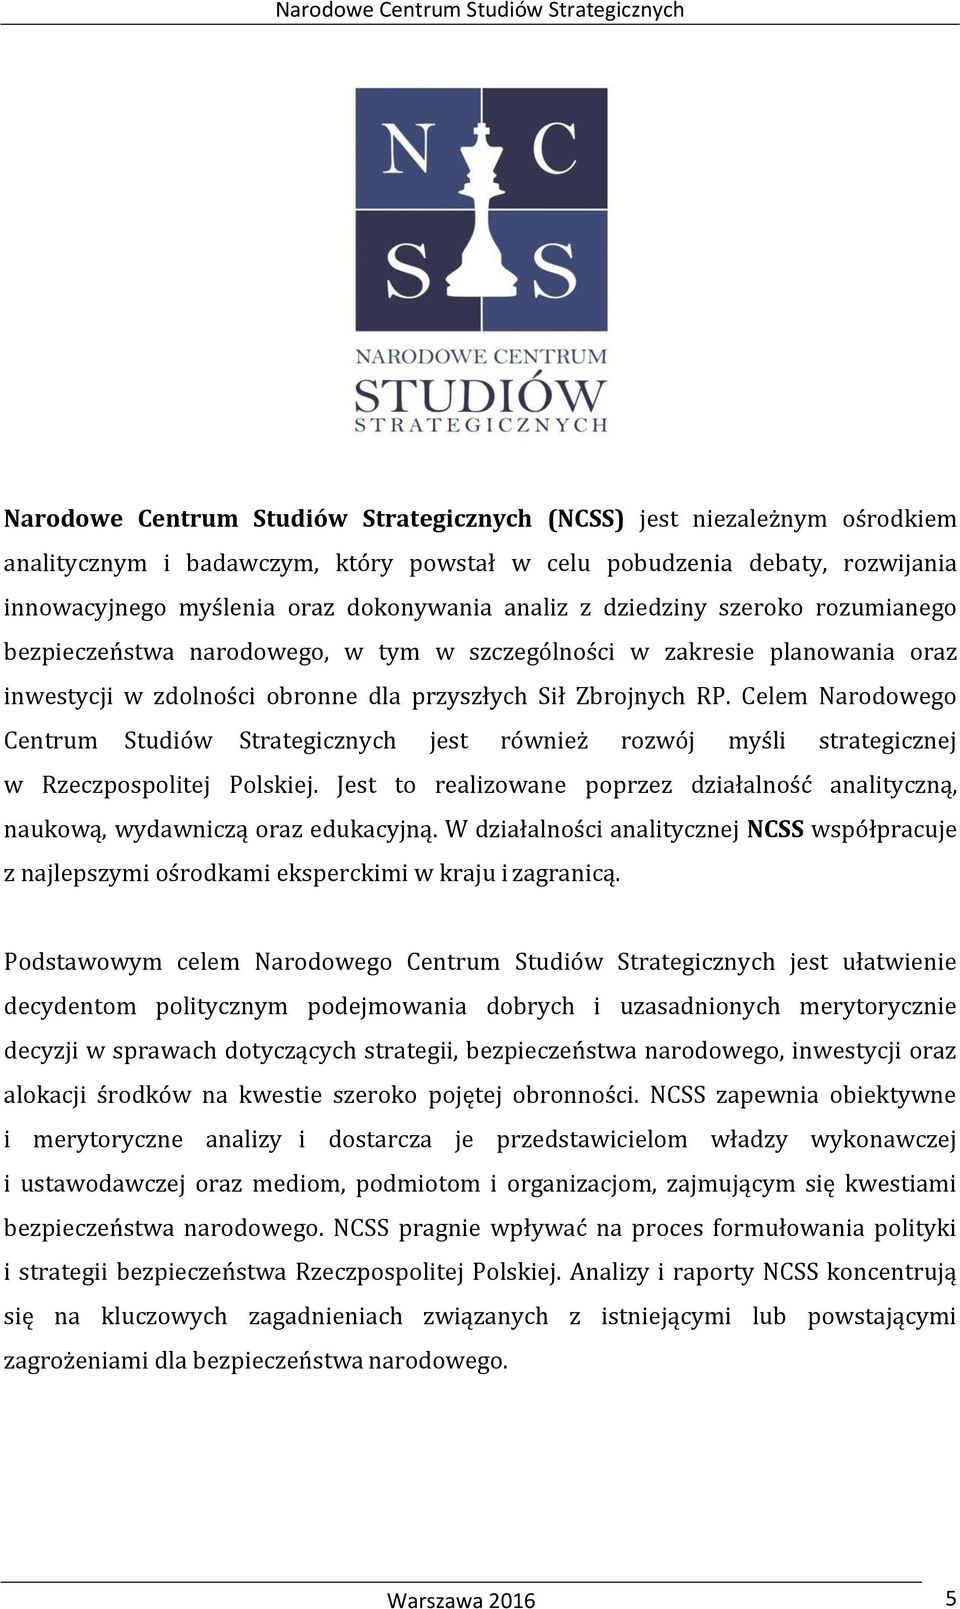 Celem Narodowego Centrum Studiów Strategicznych jest również rozwój myśli strategicznej w Rzeczpospolitej Polskiej.